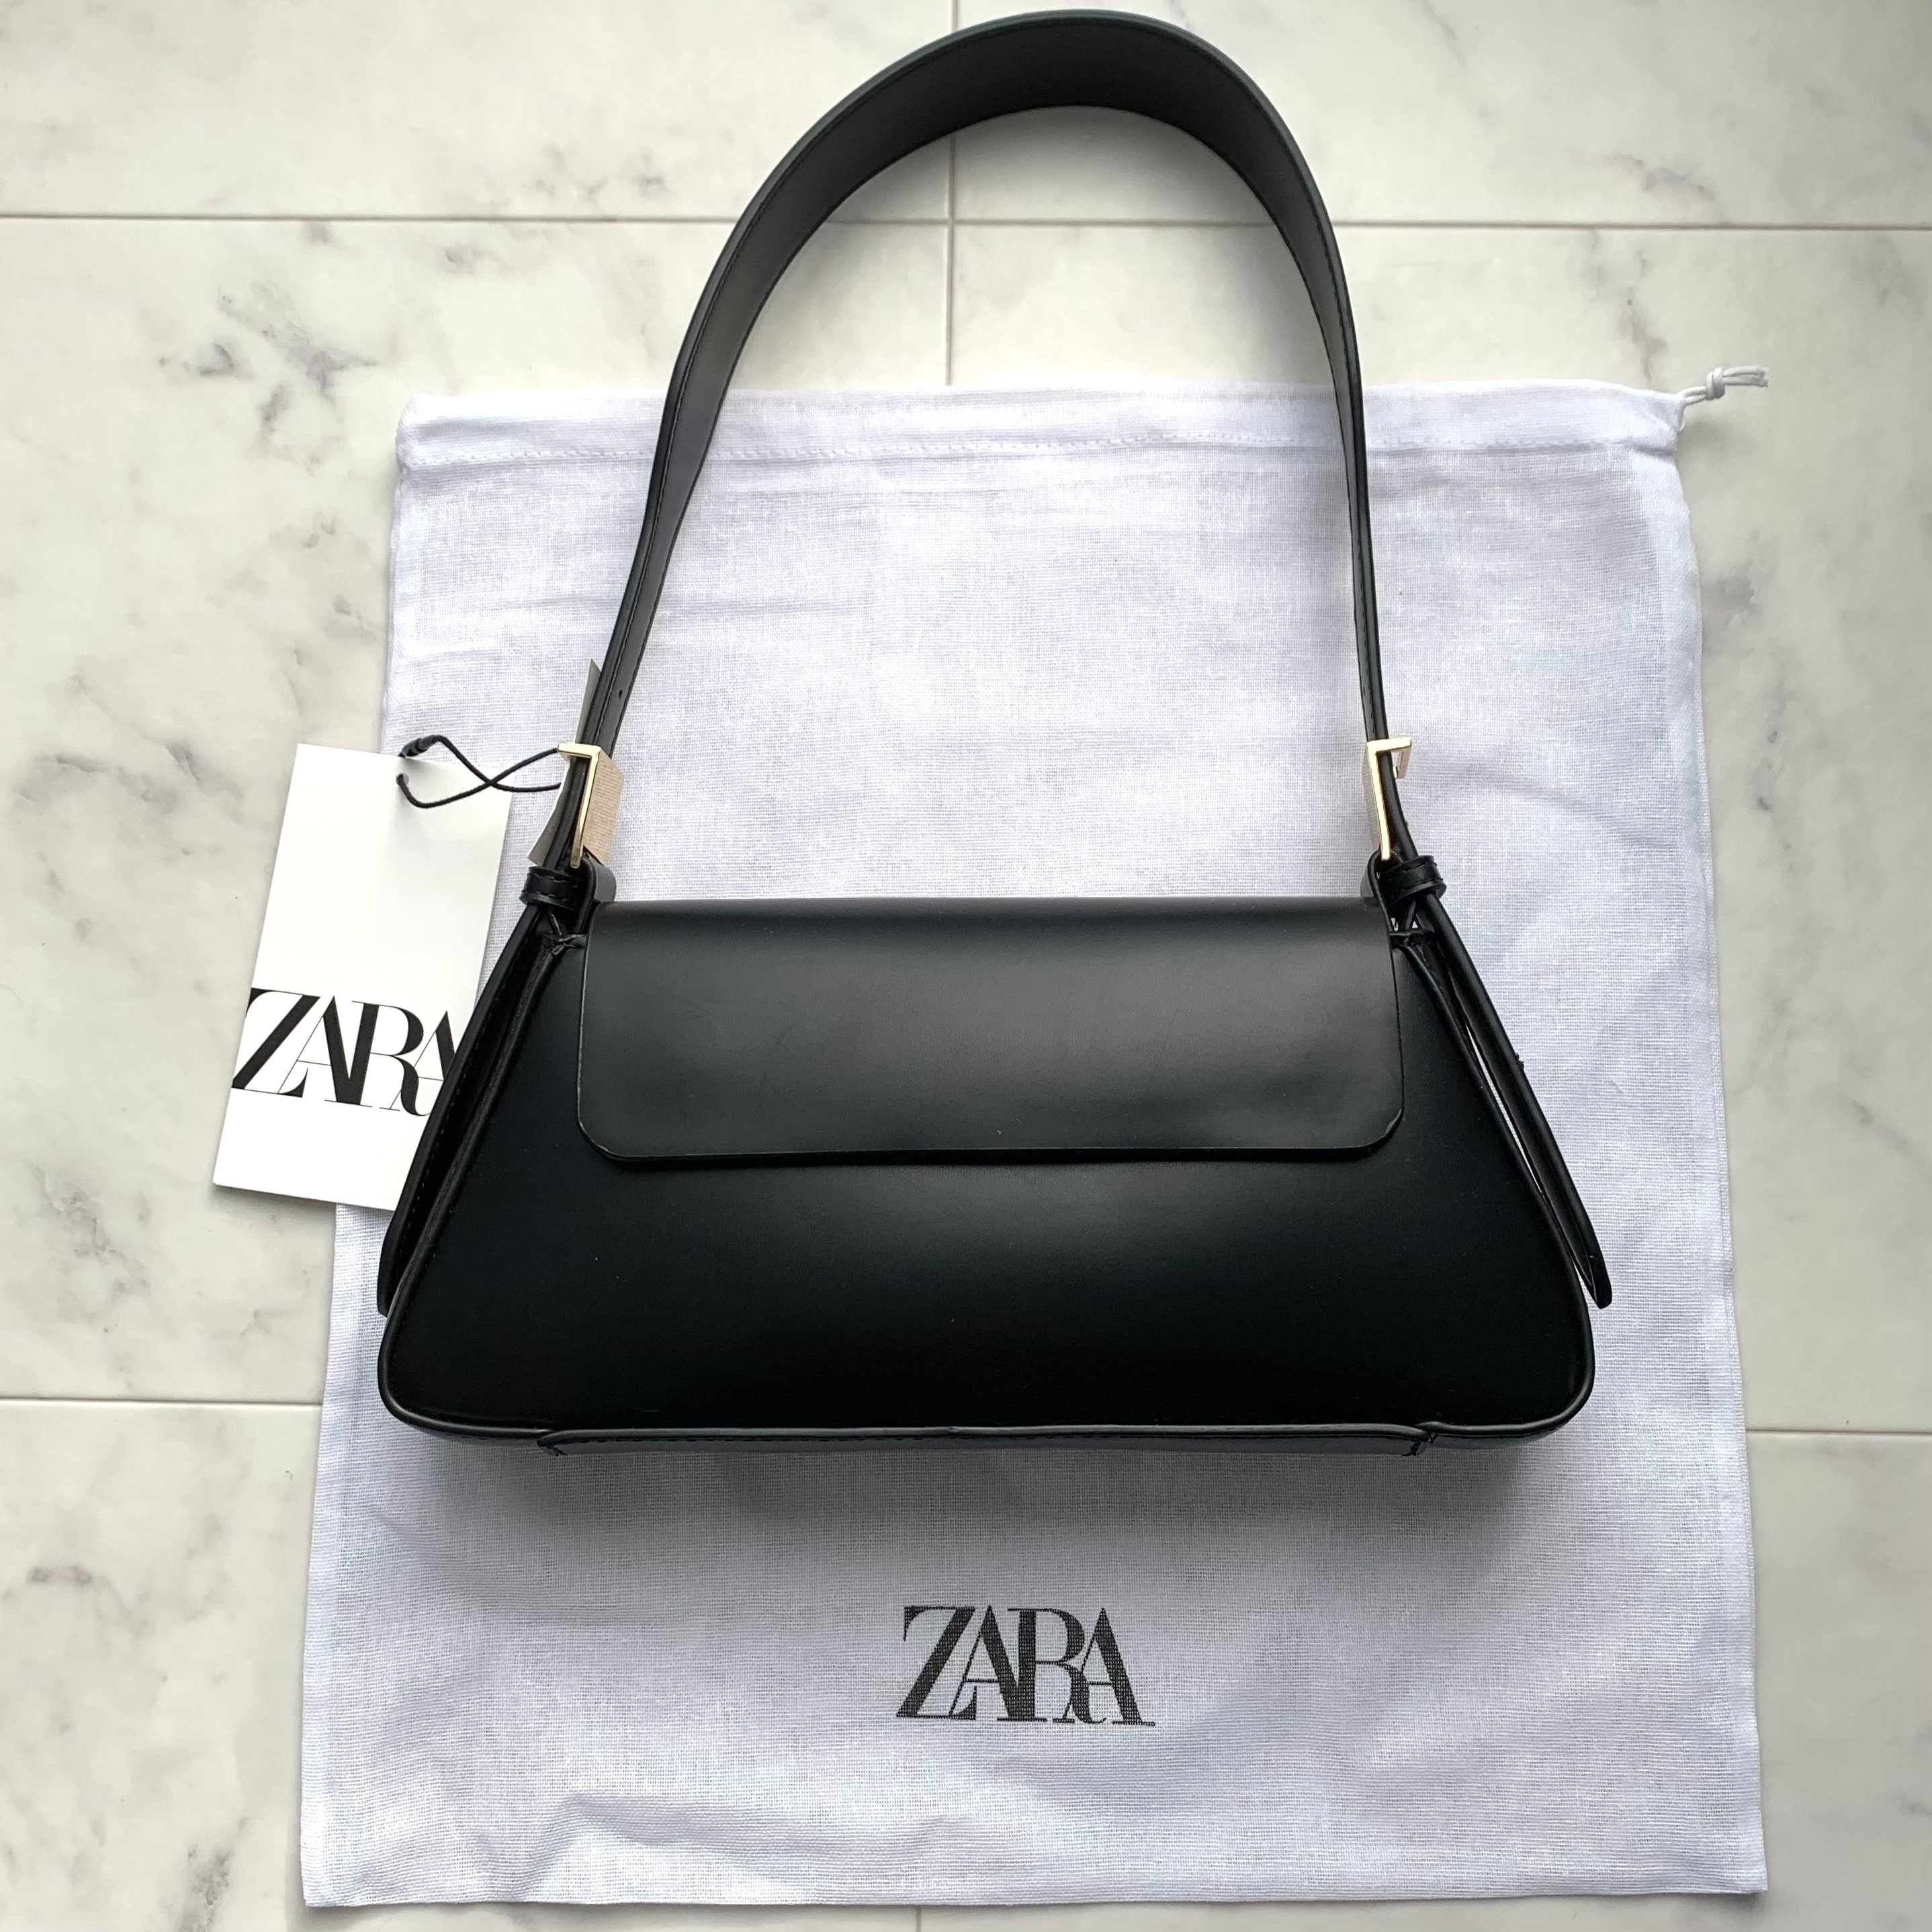 ZARA（ザラ）のおしゃれバッグ「フラップ ミニマル ショルダーバック」